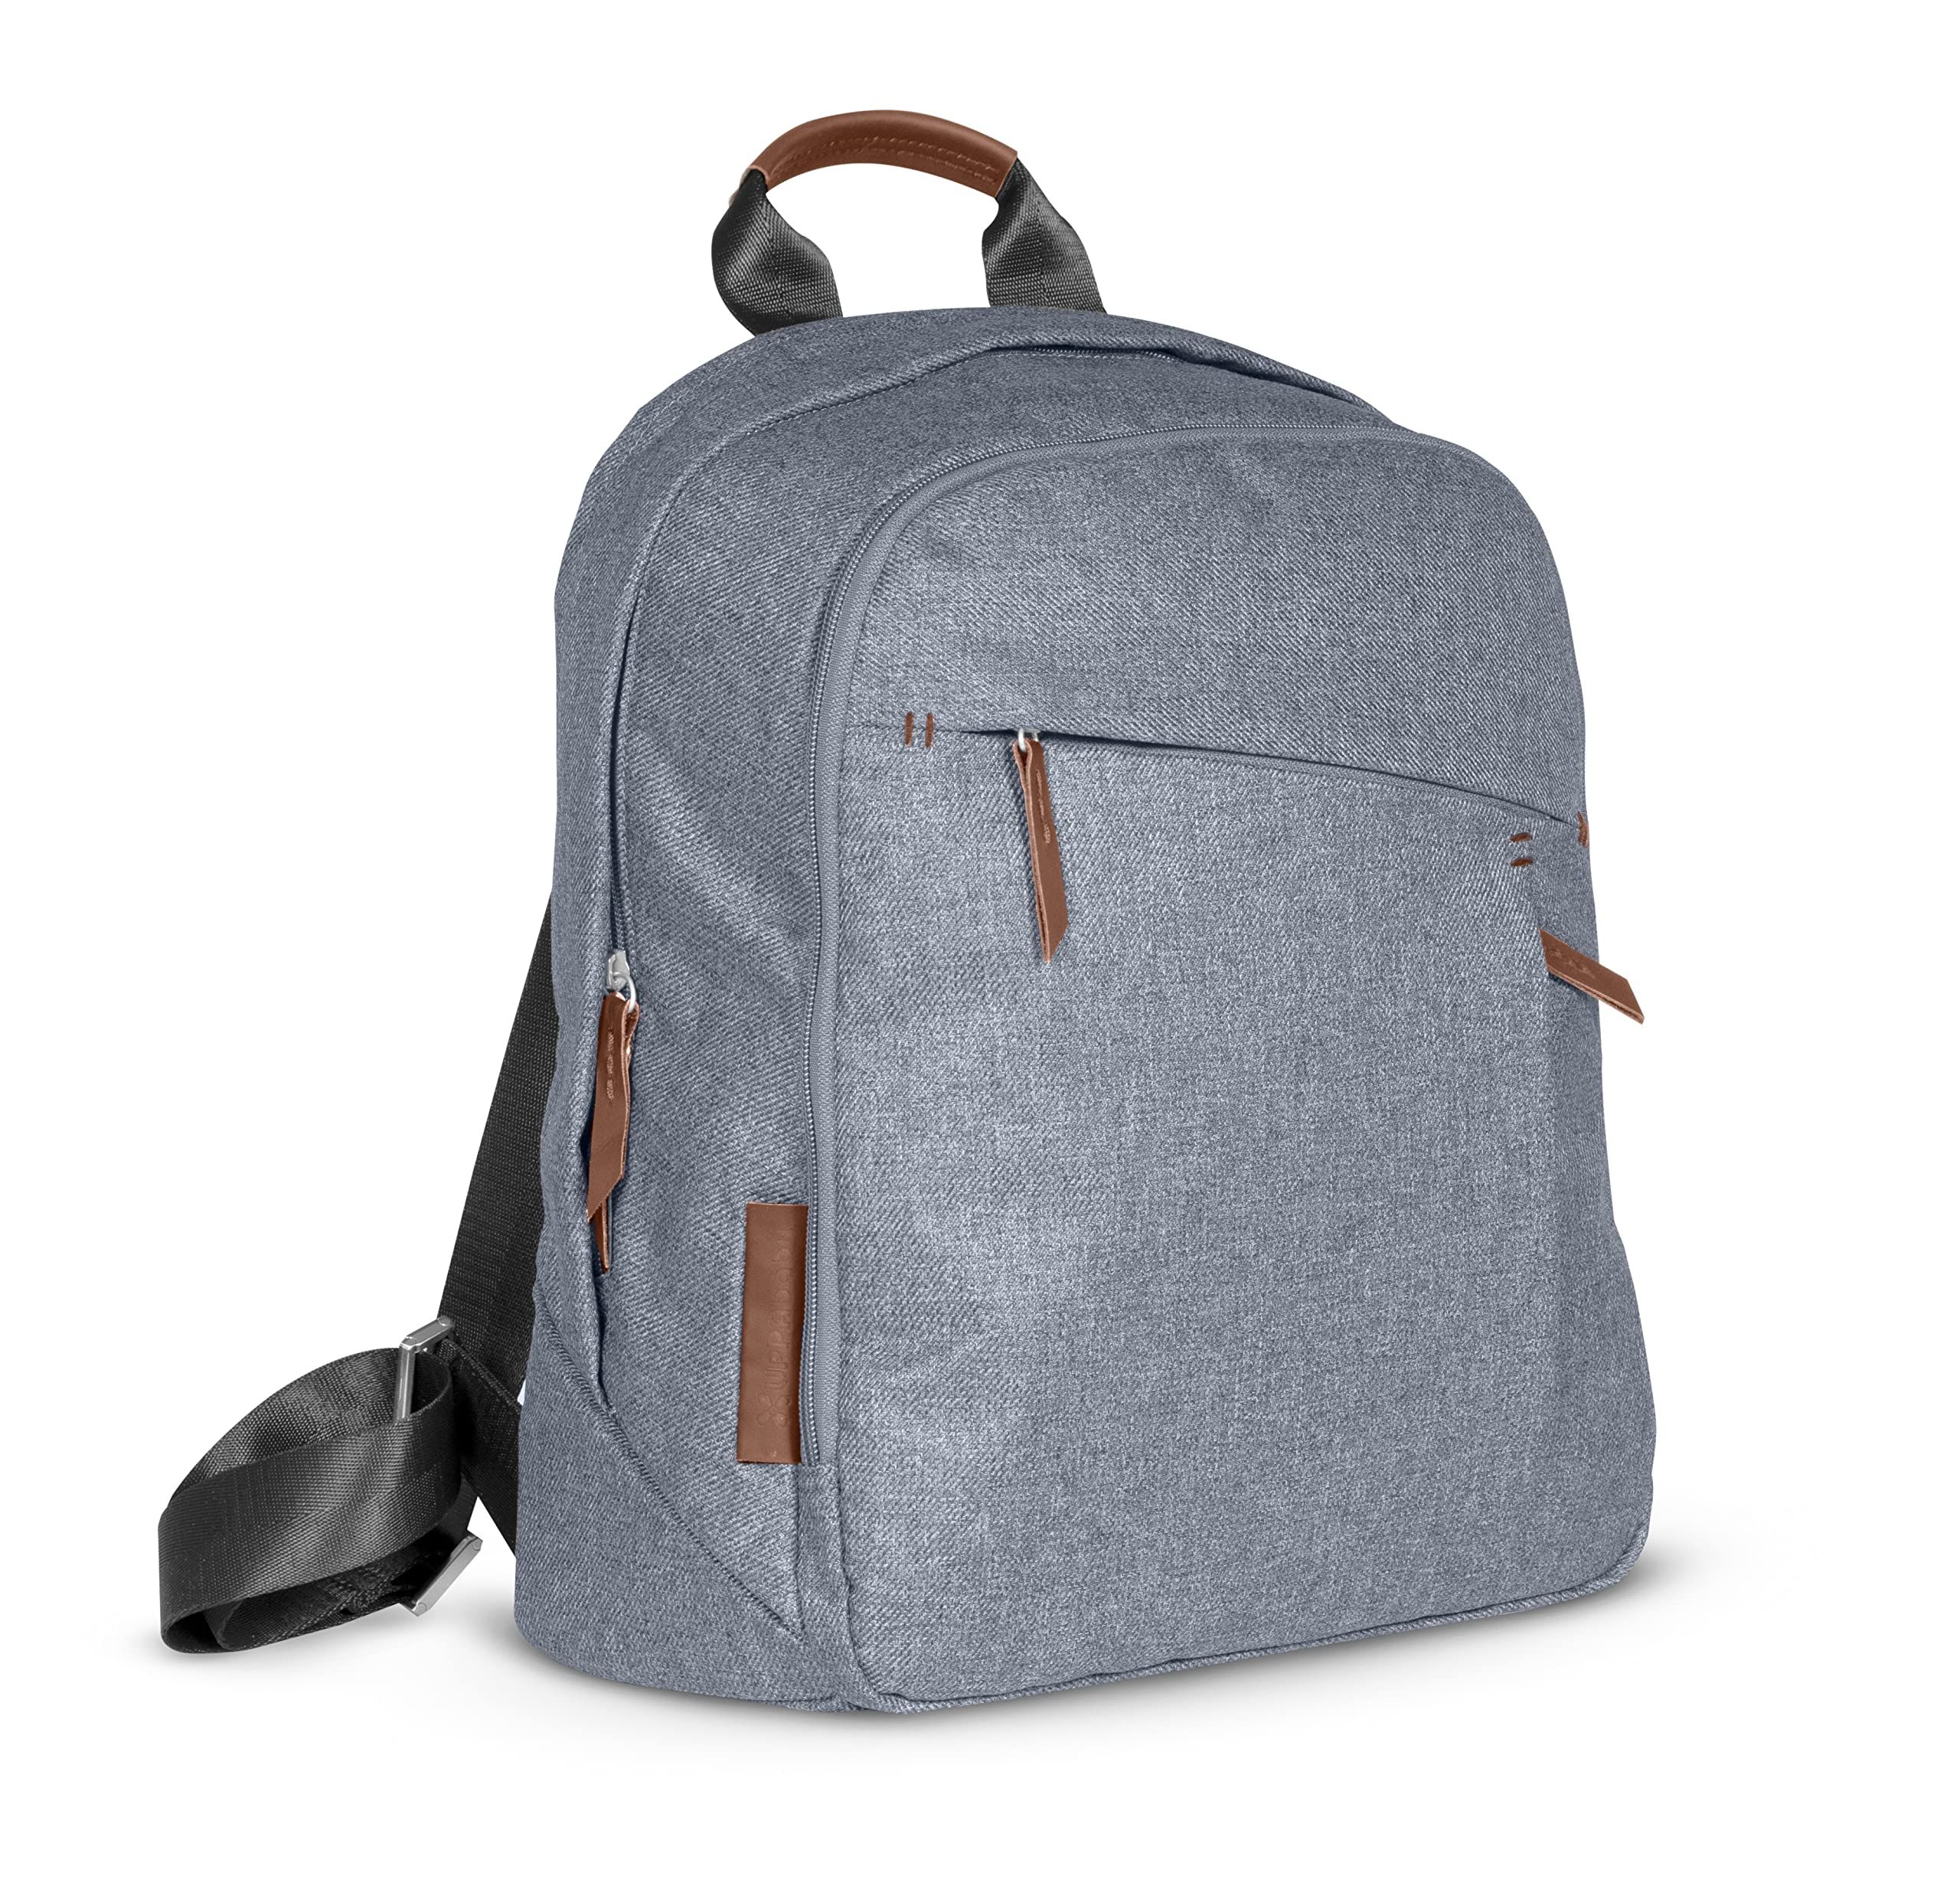 Changing Backpack - Greyson (chacoal Melange/Saddle Leather) | Amazon (US)